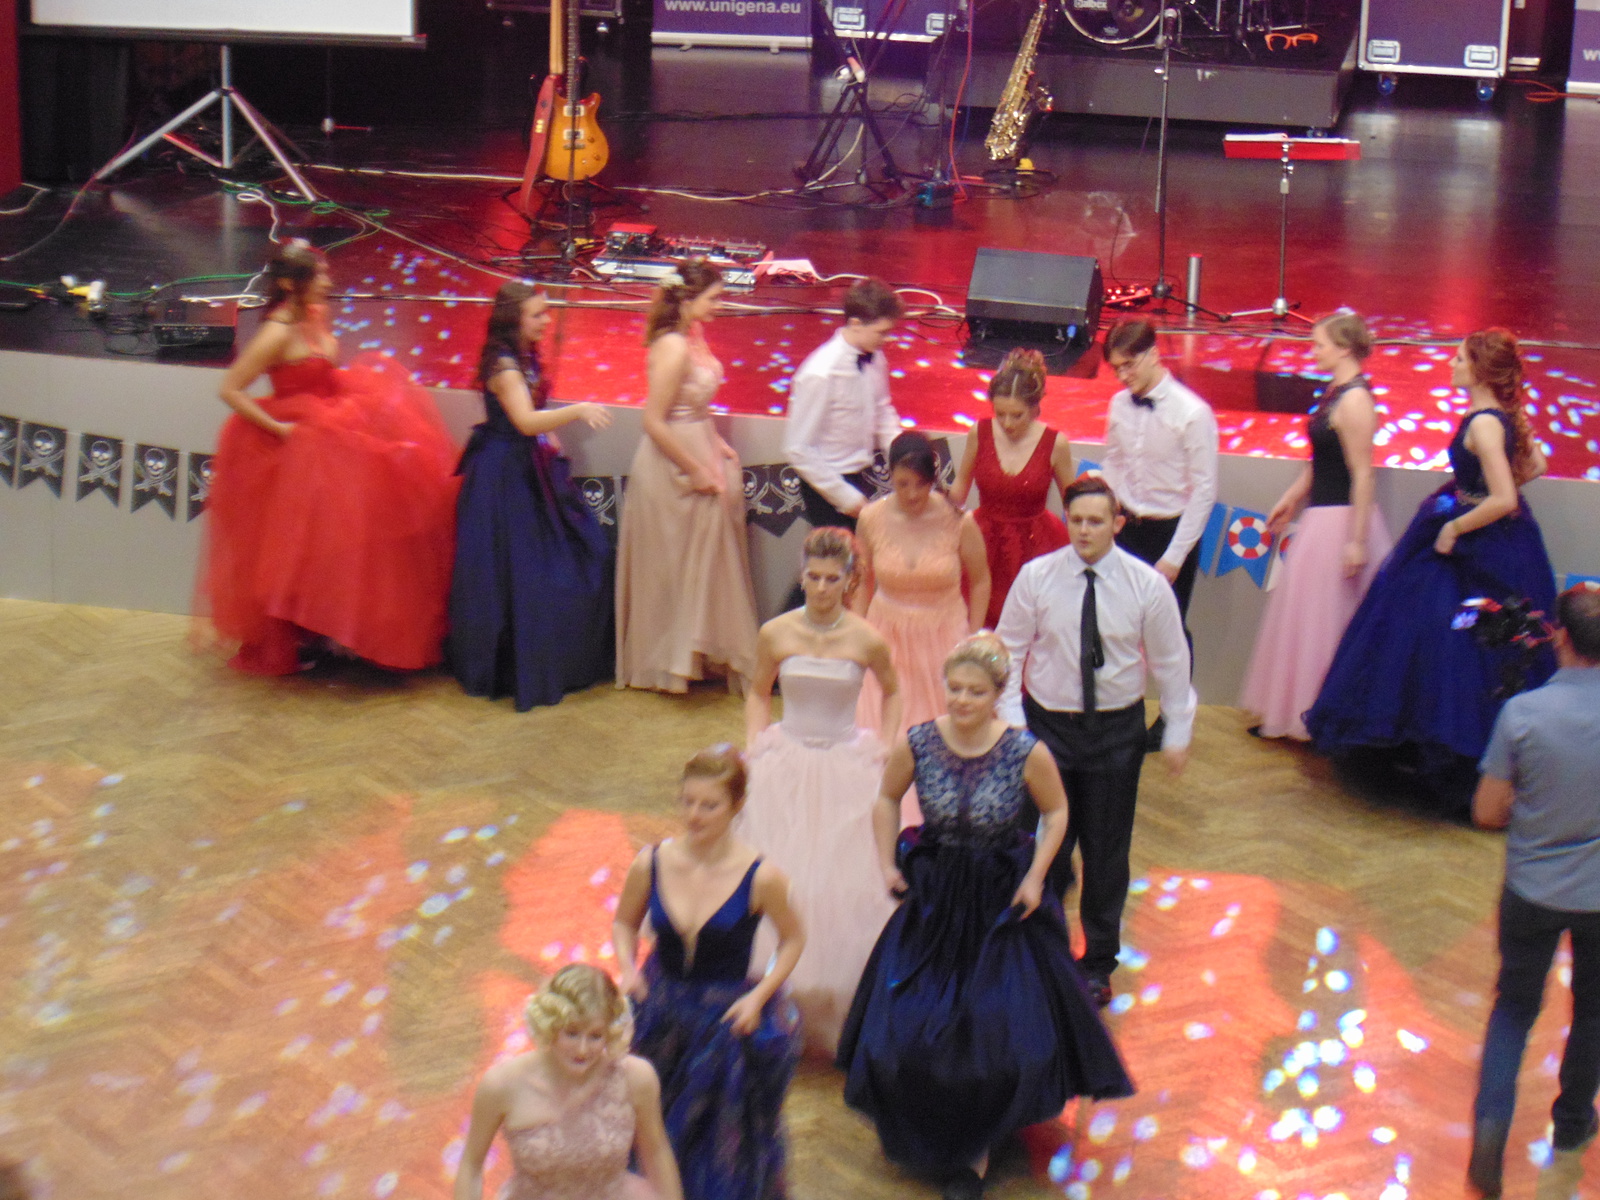 Maturitní ples prožili studenti gymnázia v Benešově - Benešovský deník